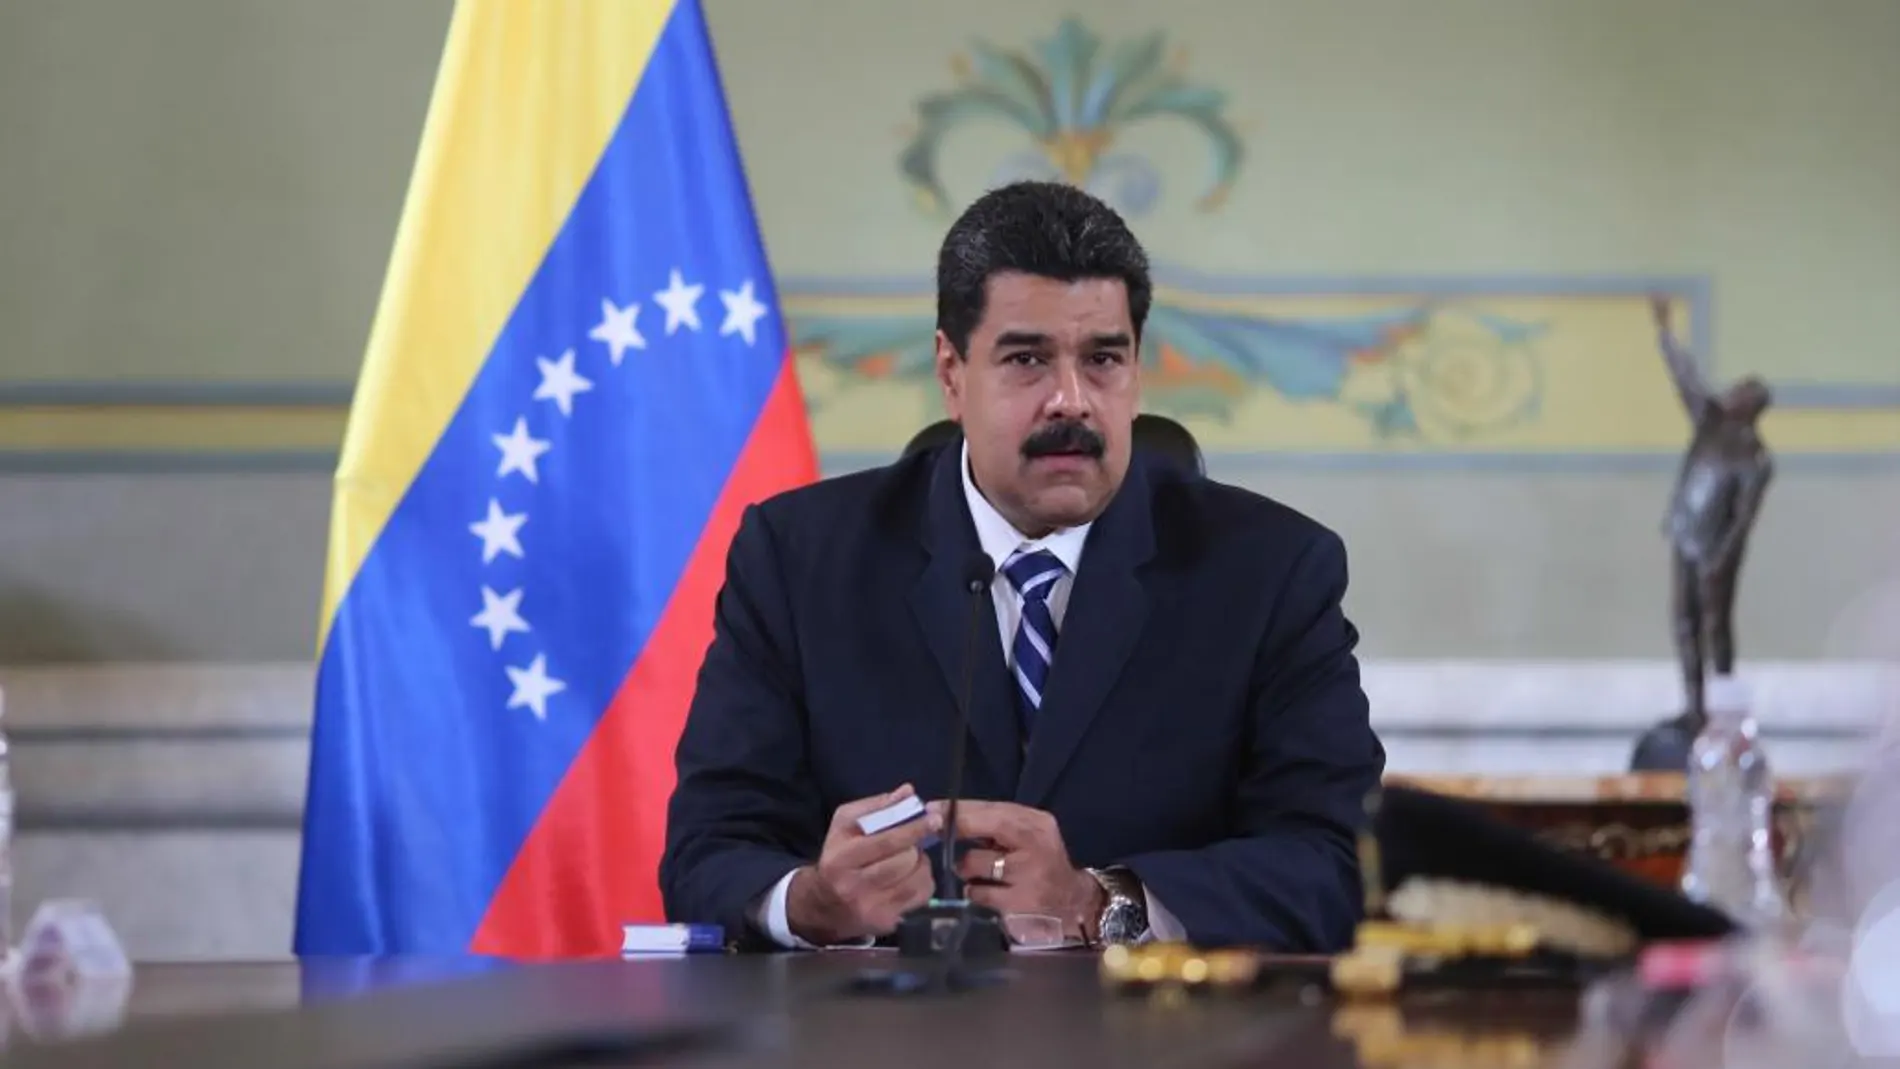 Nicolás Maduro, habla en una reunión en Caracas.